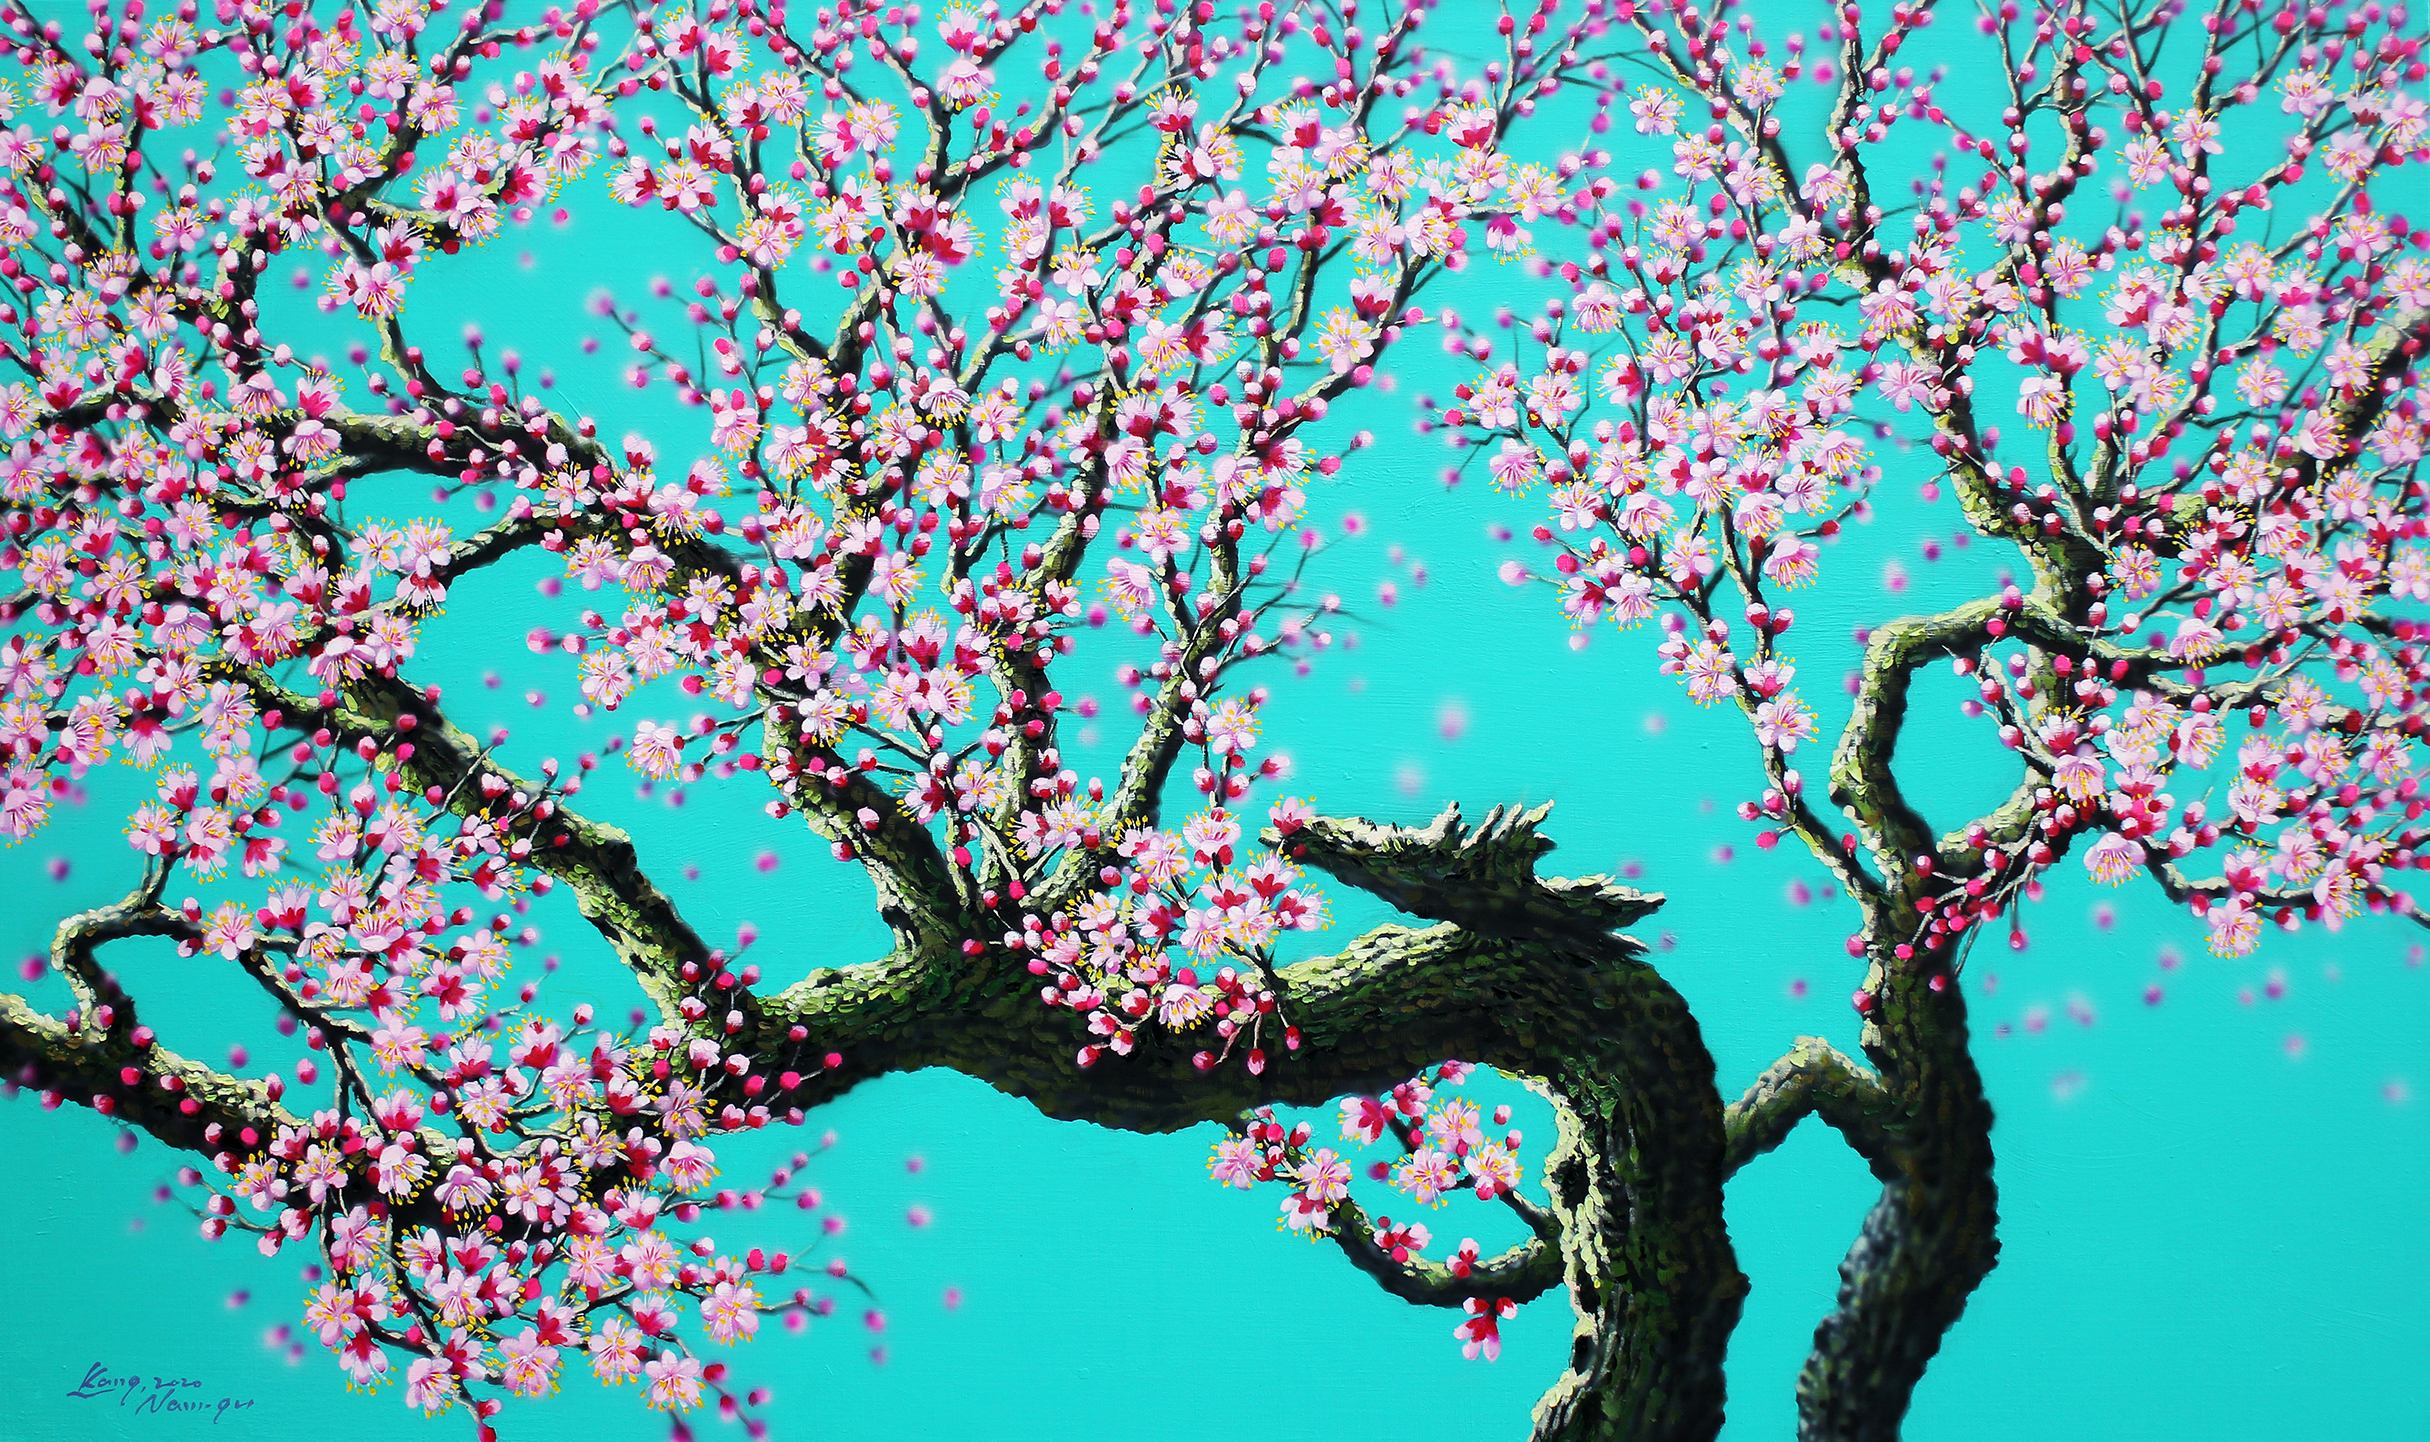 Painting Spring for Us: Kang Namgu